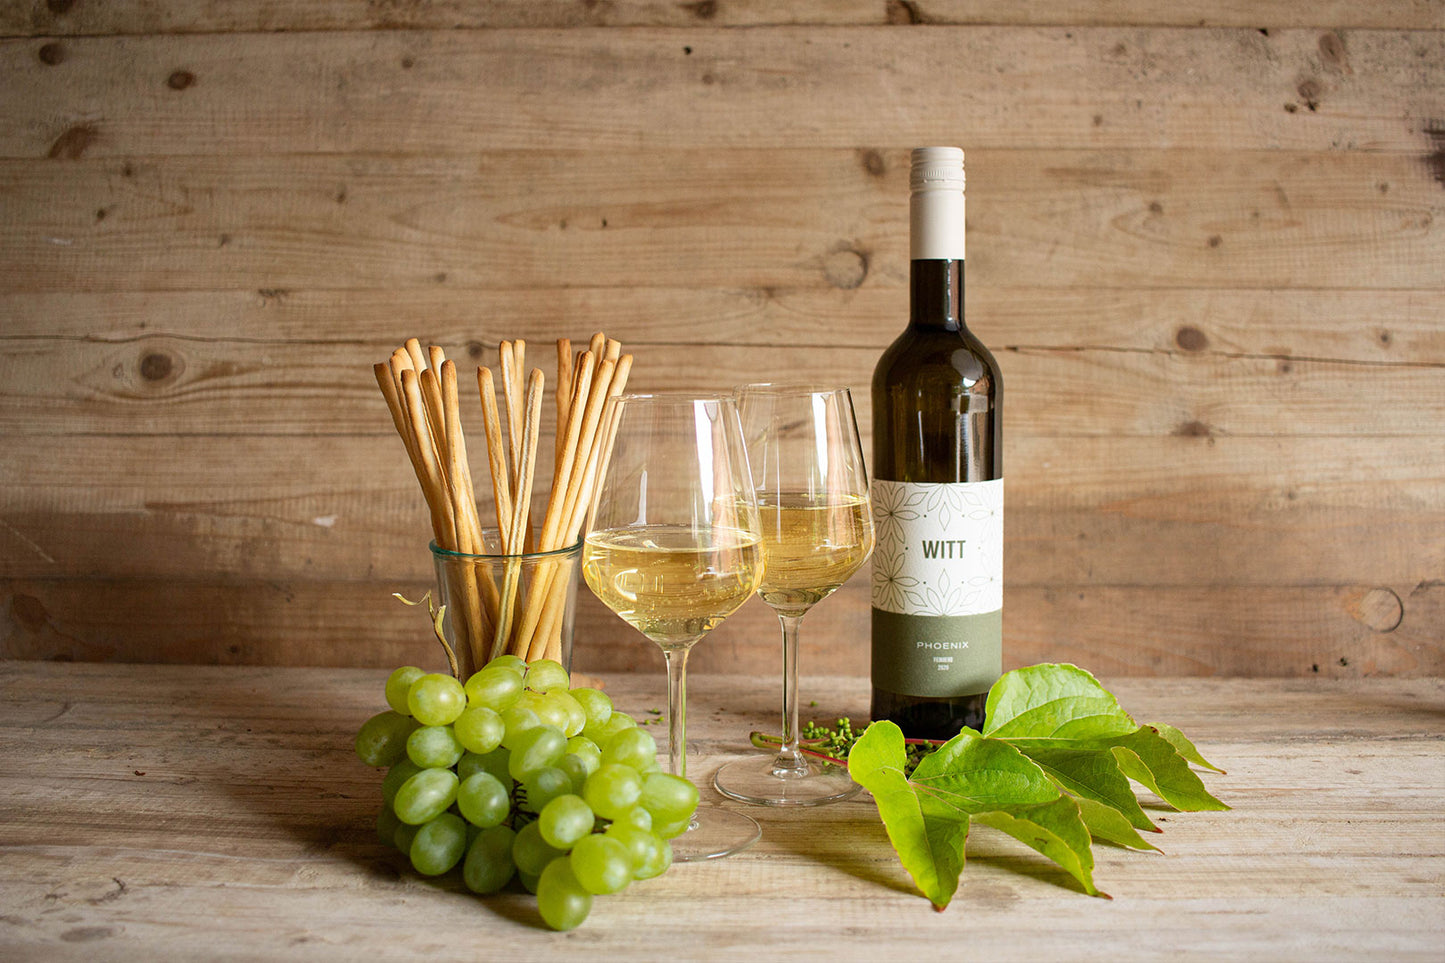 Regionale Auswahl an Weinen, wie z.B. dieser Phoenix Weißwein